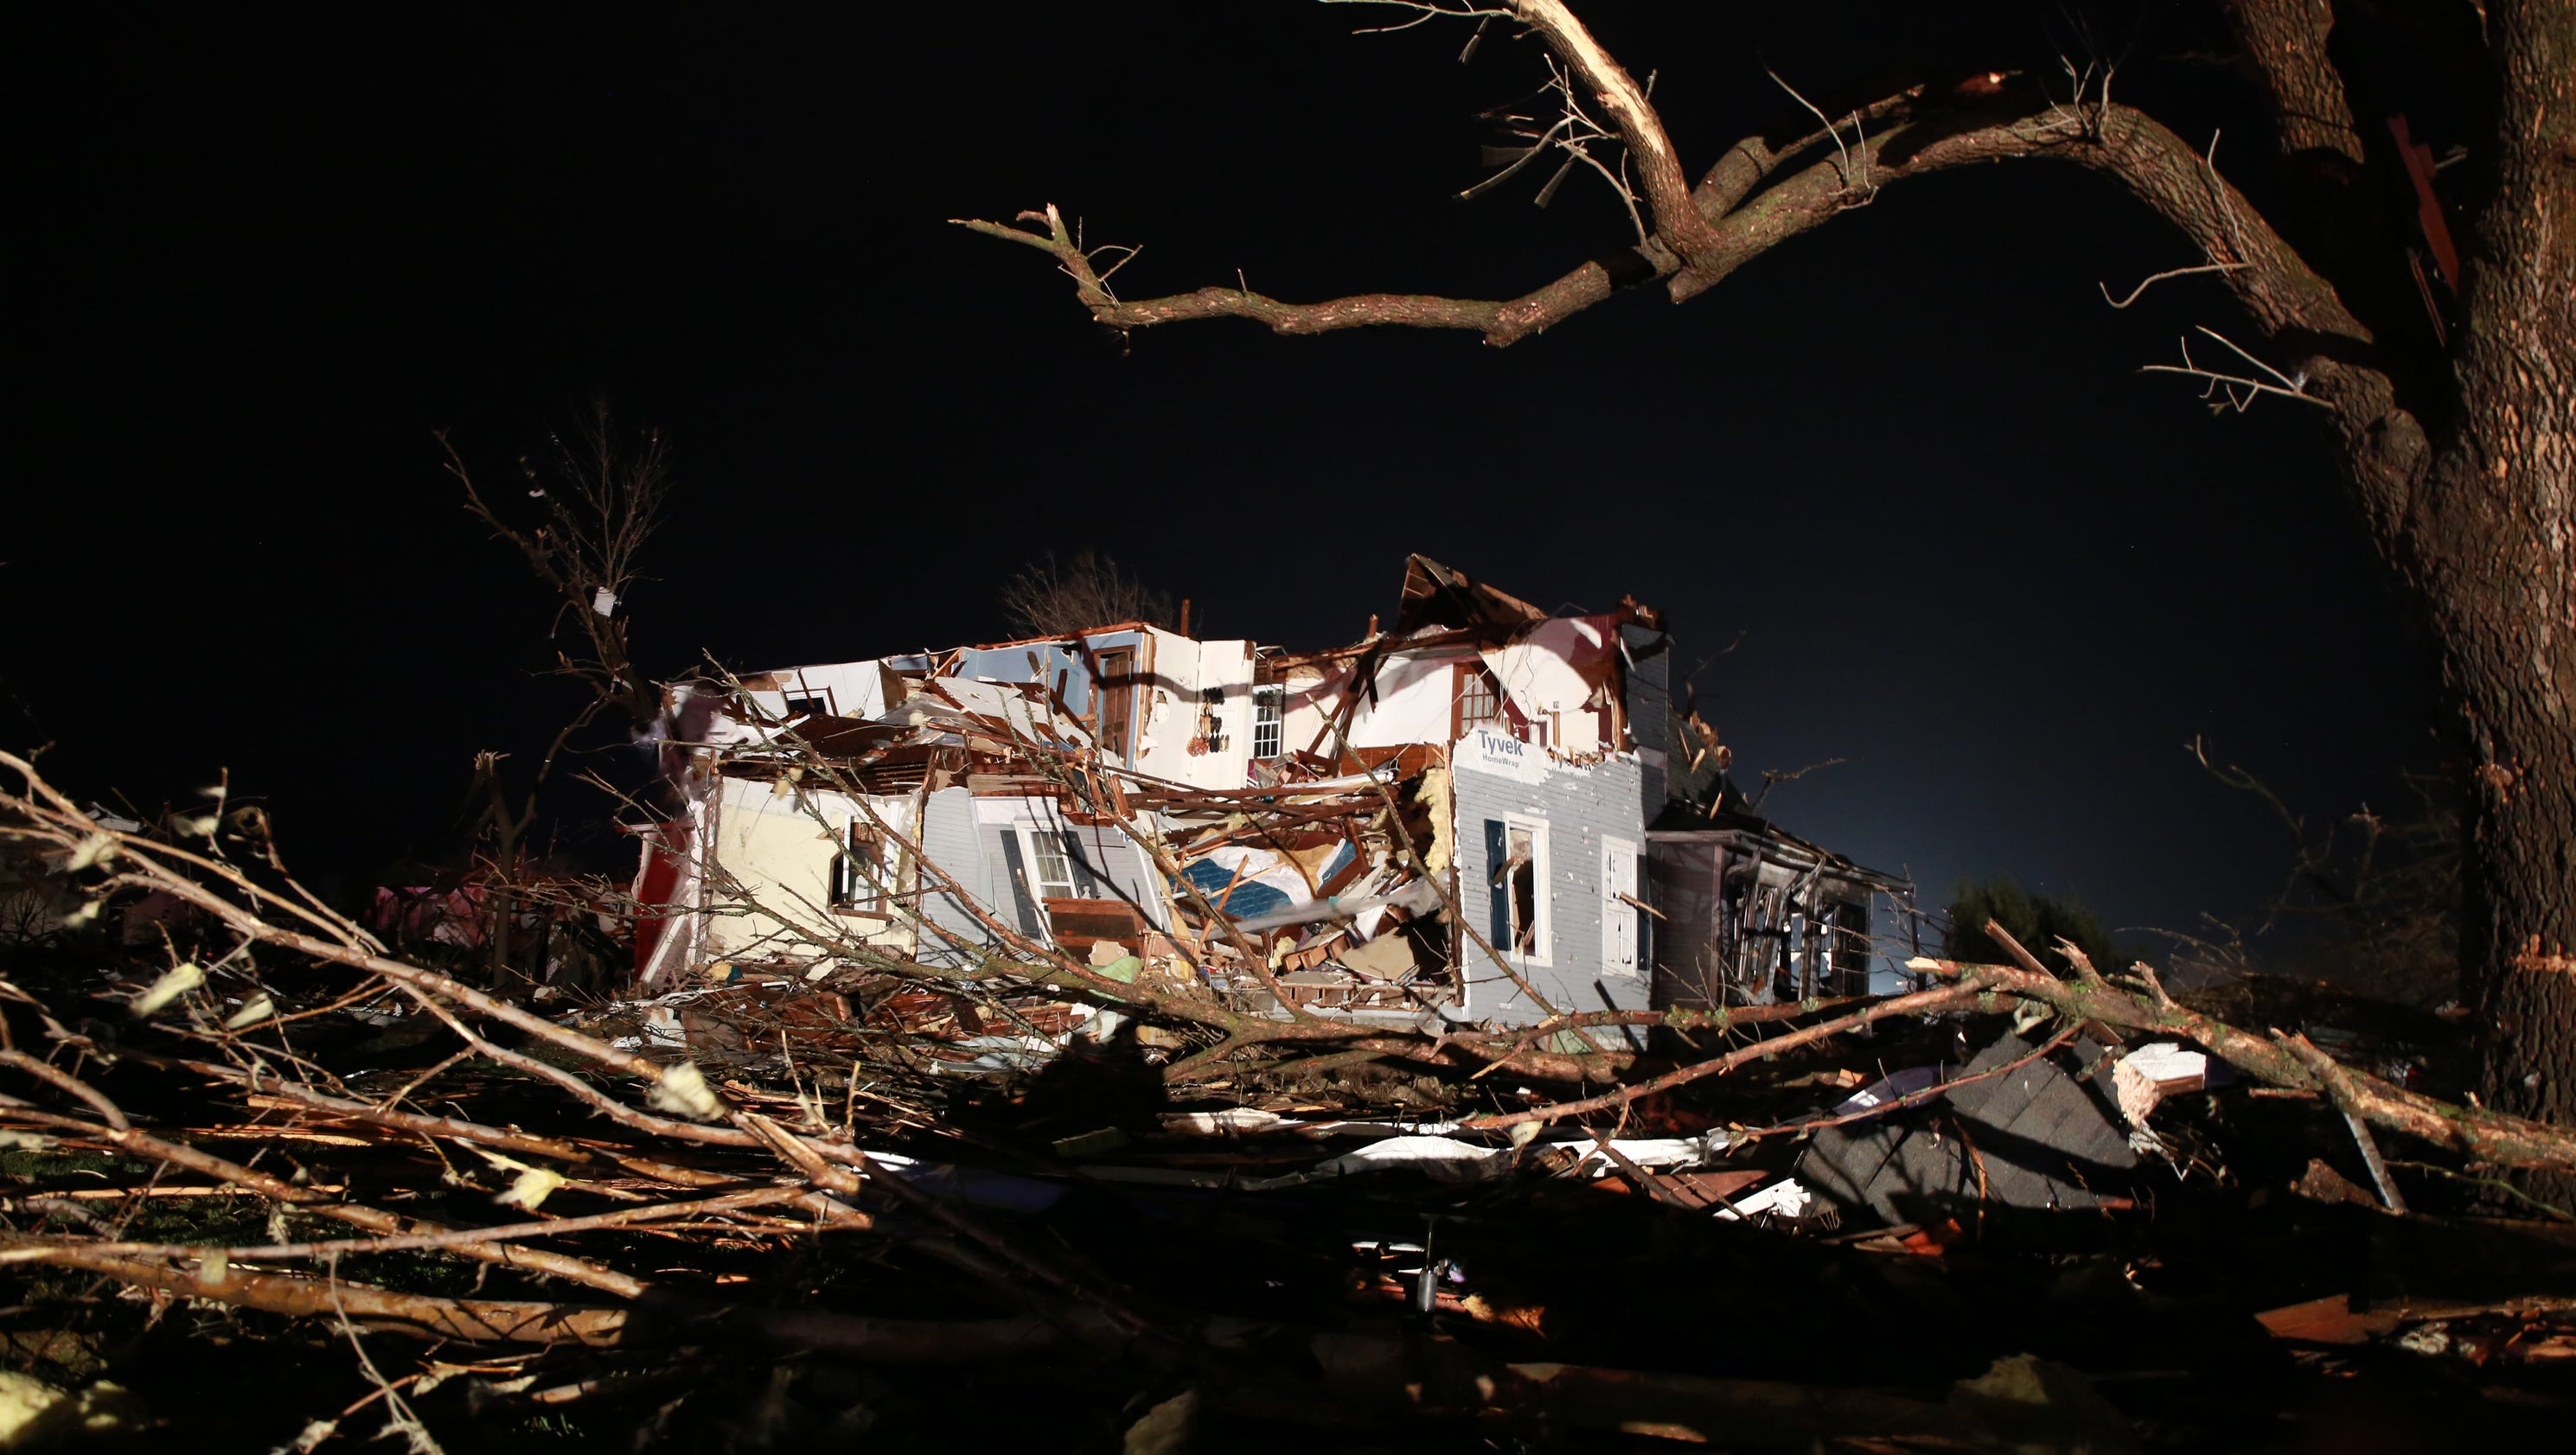 One dead as tornadoes lash central U.S.